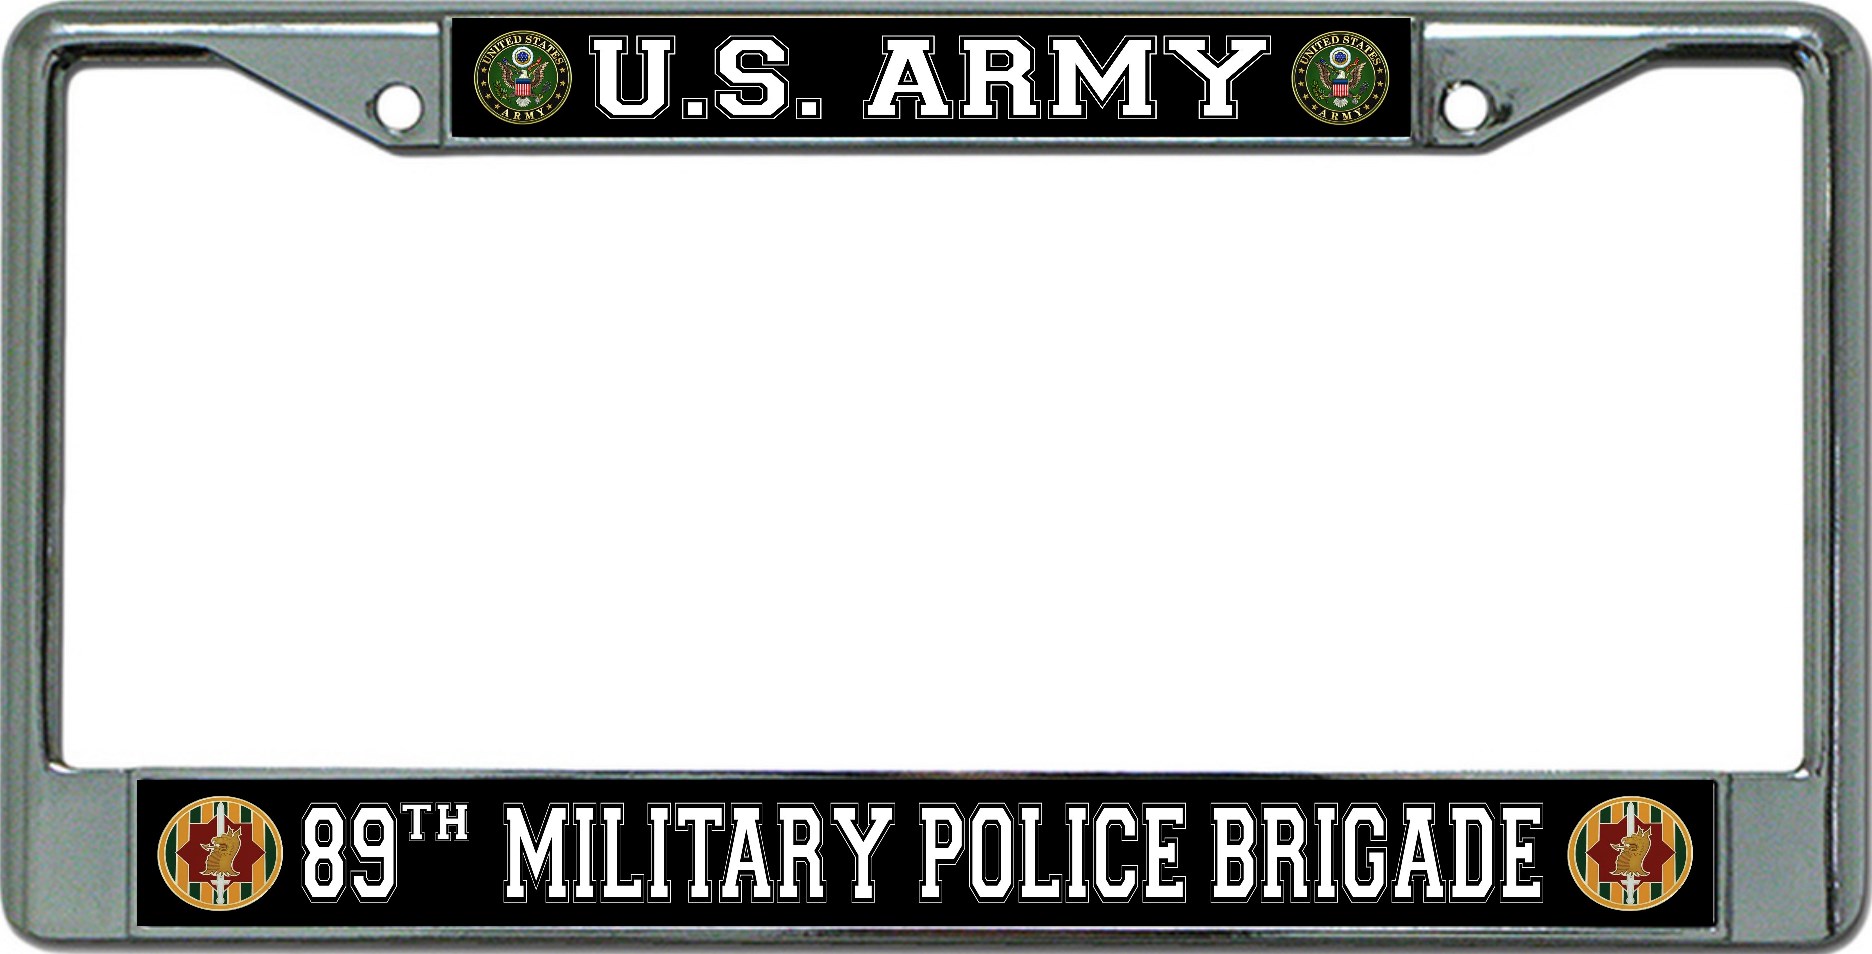 U.S. Army 89th Military Police Brigade Chrome License Plate FRAME